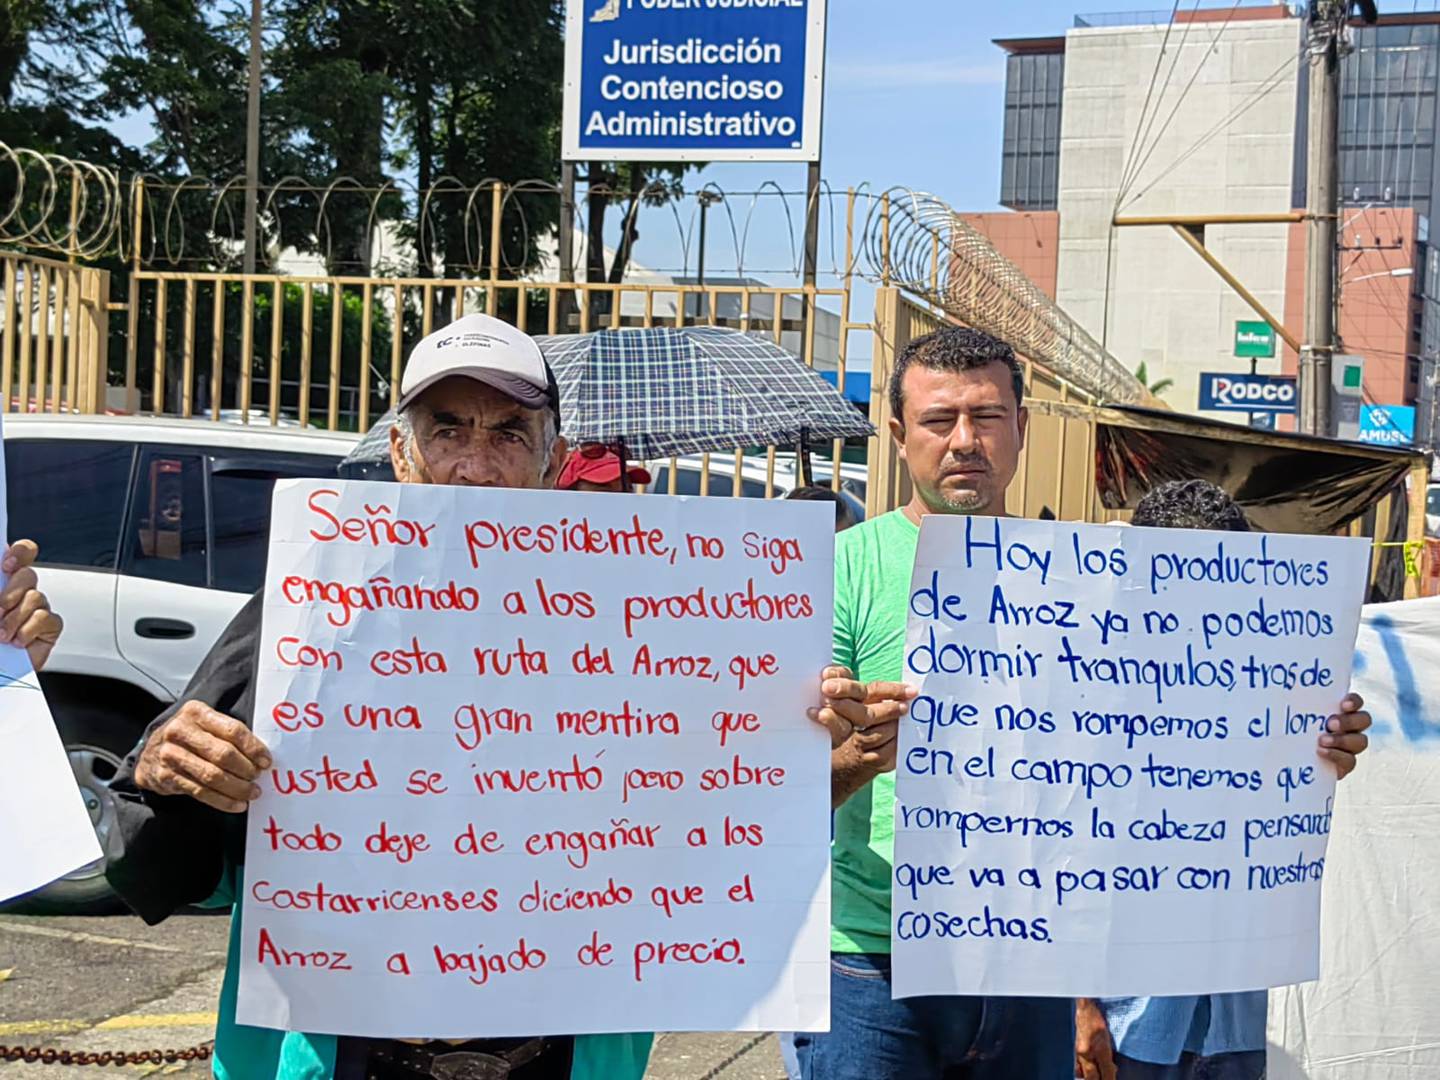 Arroceros del país se presentaron una demanda judicial contra el presidente Rodrigo Chaves Robles por las políticas sobre el arroz las cuales aseguran que les perjudica